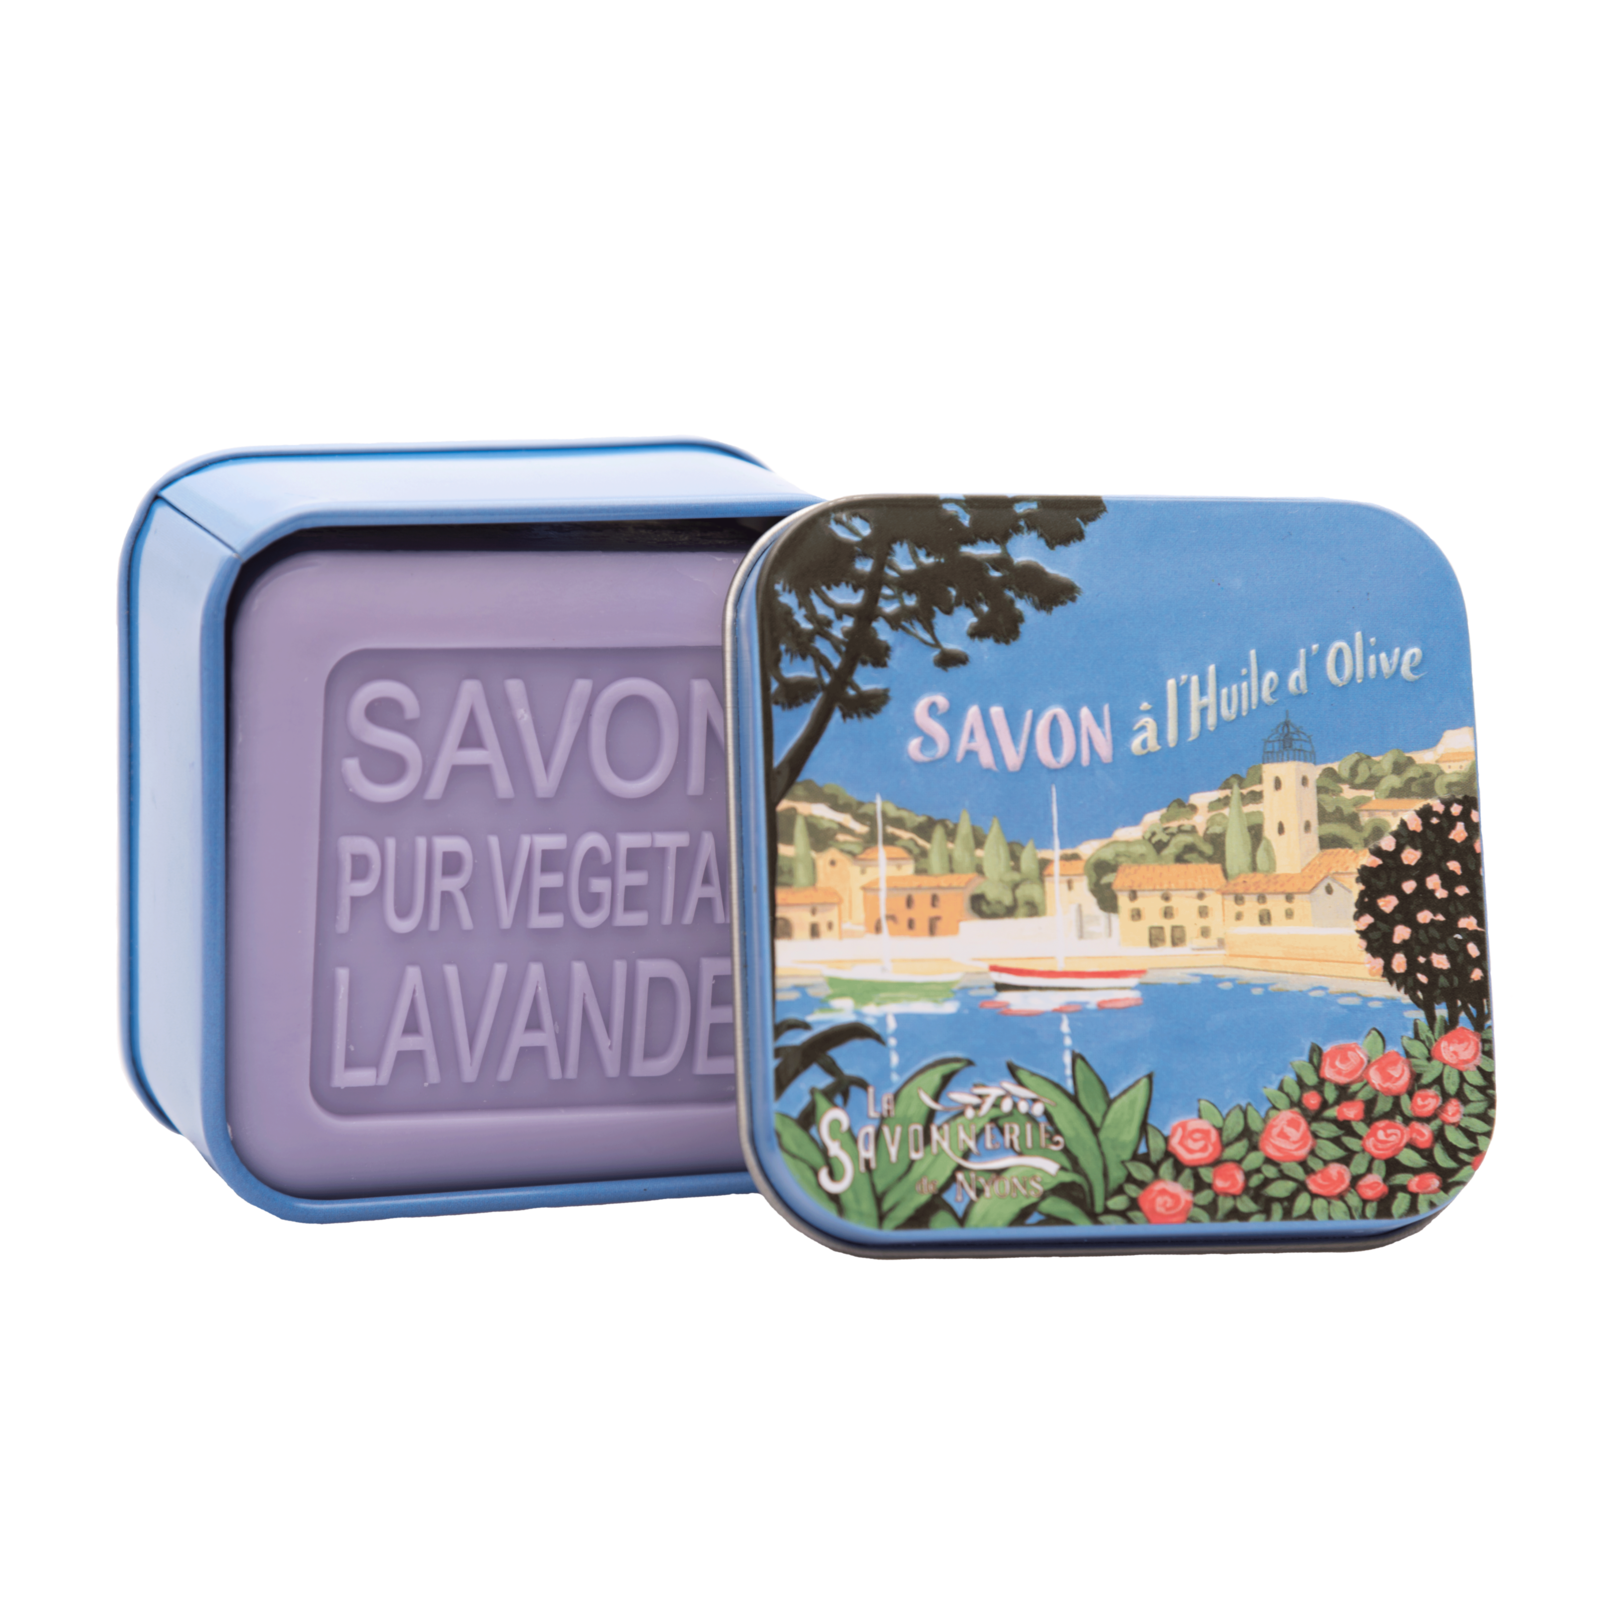 La Savonnerie de Nyons 100g Soap in Tin Box - Landscapes Provence Paysage Soap La Savonnerie de Nyons Back in stock Bath & Body_Bar Soap Brand_La Savonnerie de Nyons KTFWHS 30498-ouverte_7f53ead7-6563-4660-bf71-5d80482b9ff5